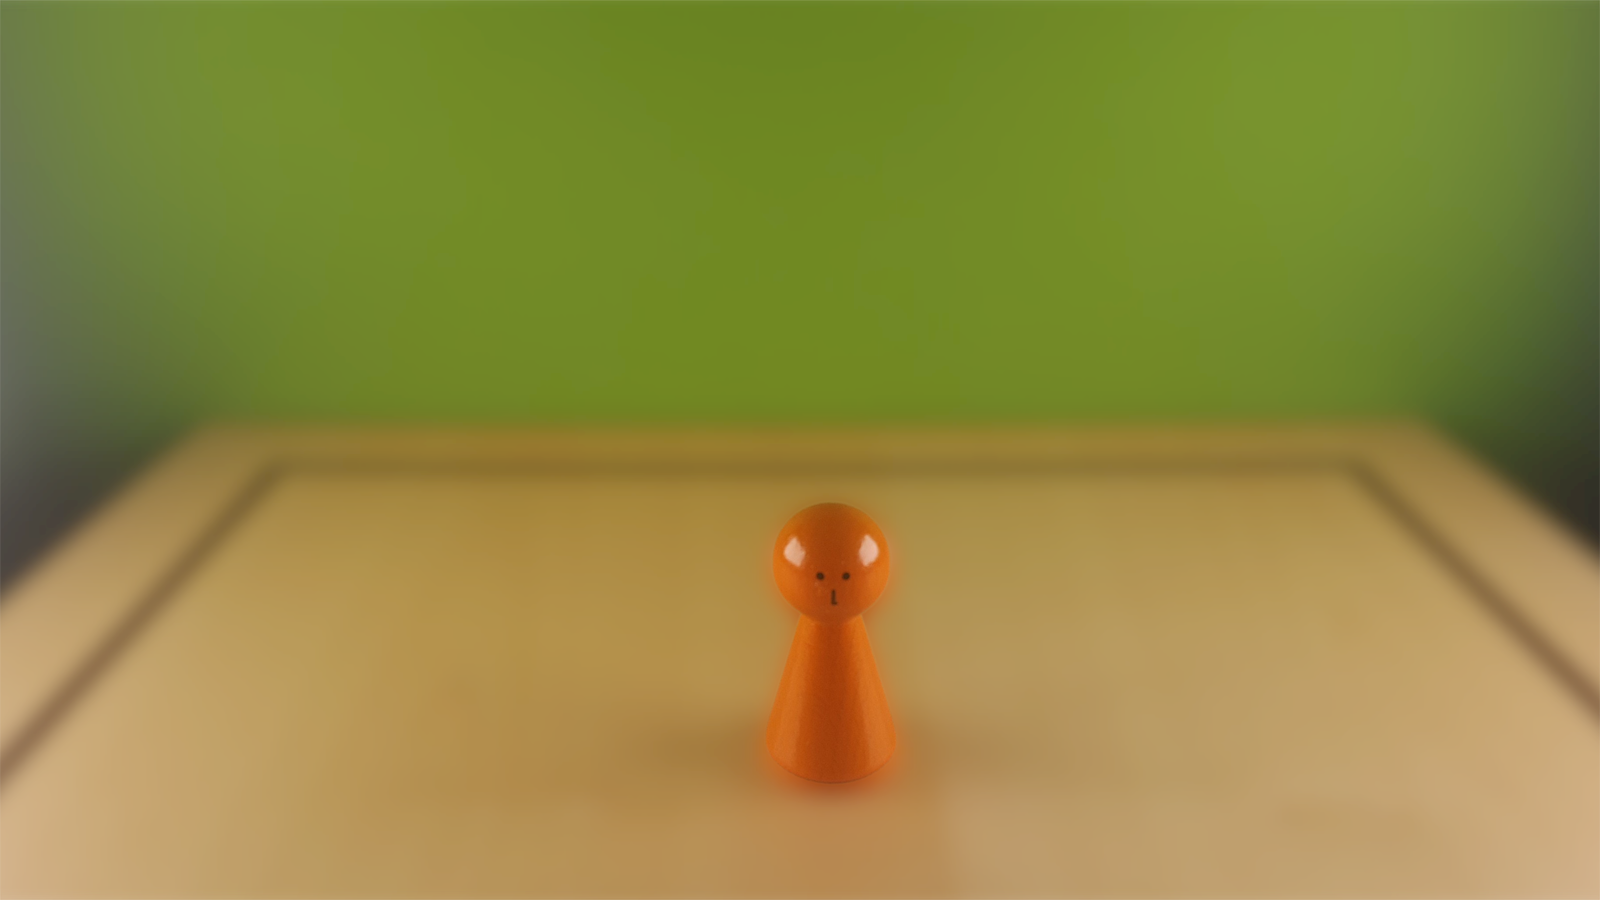 www.systembrett.at · Systembrett-Artikel · Einzel-Figur 6 cm in orange (mit Augen);